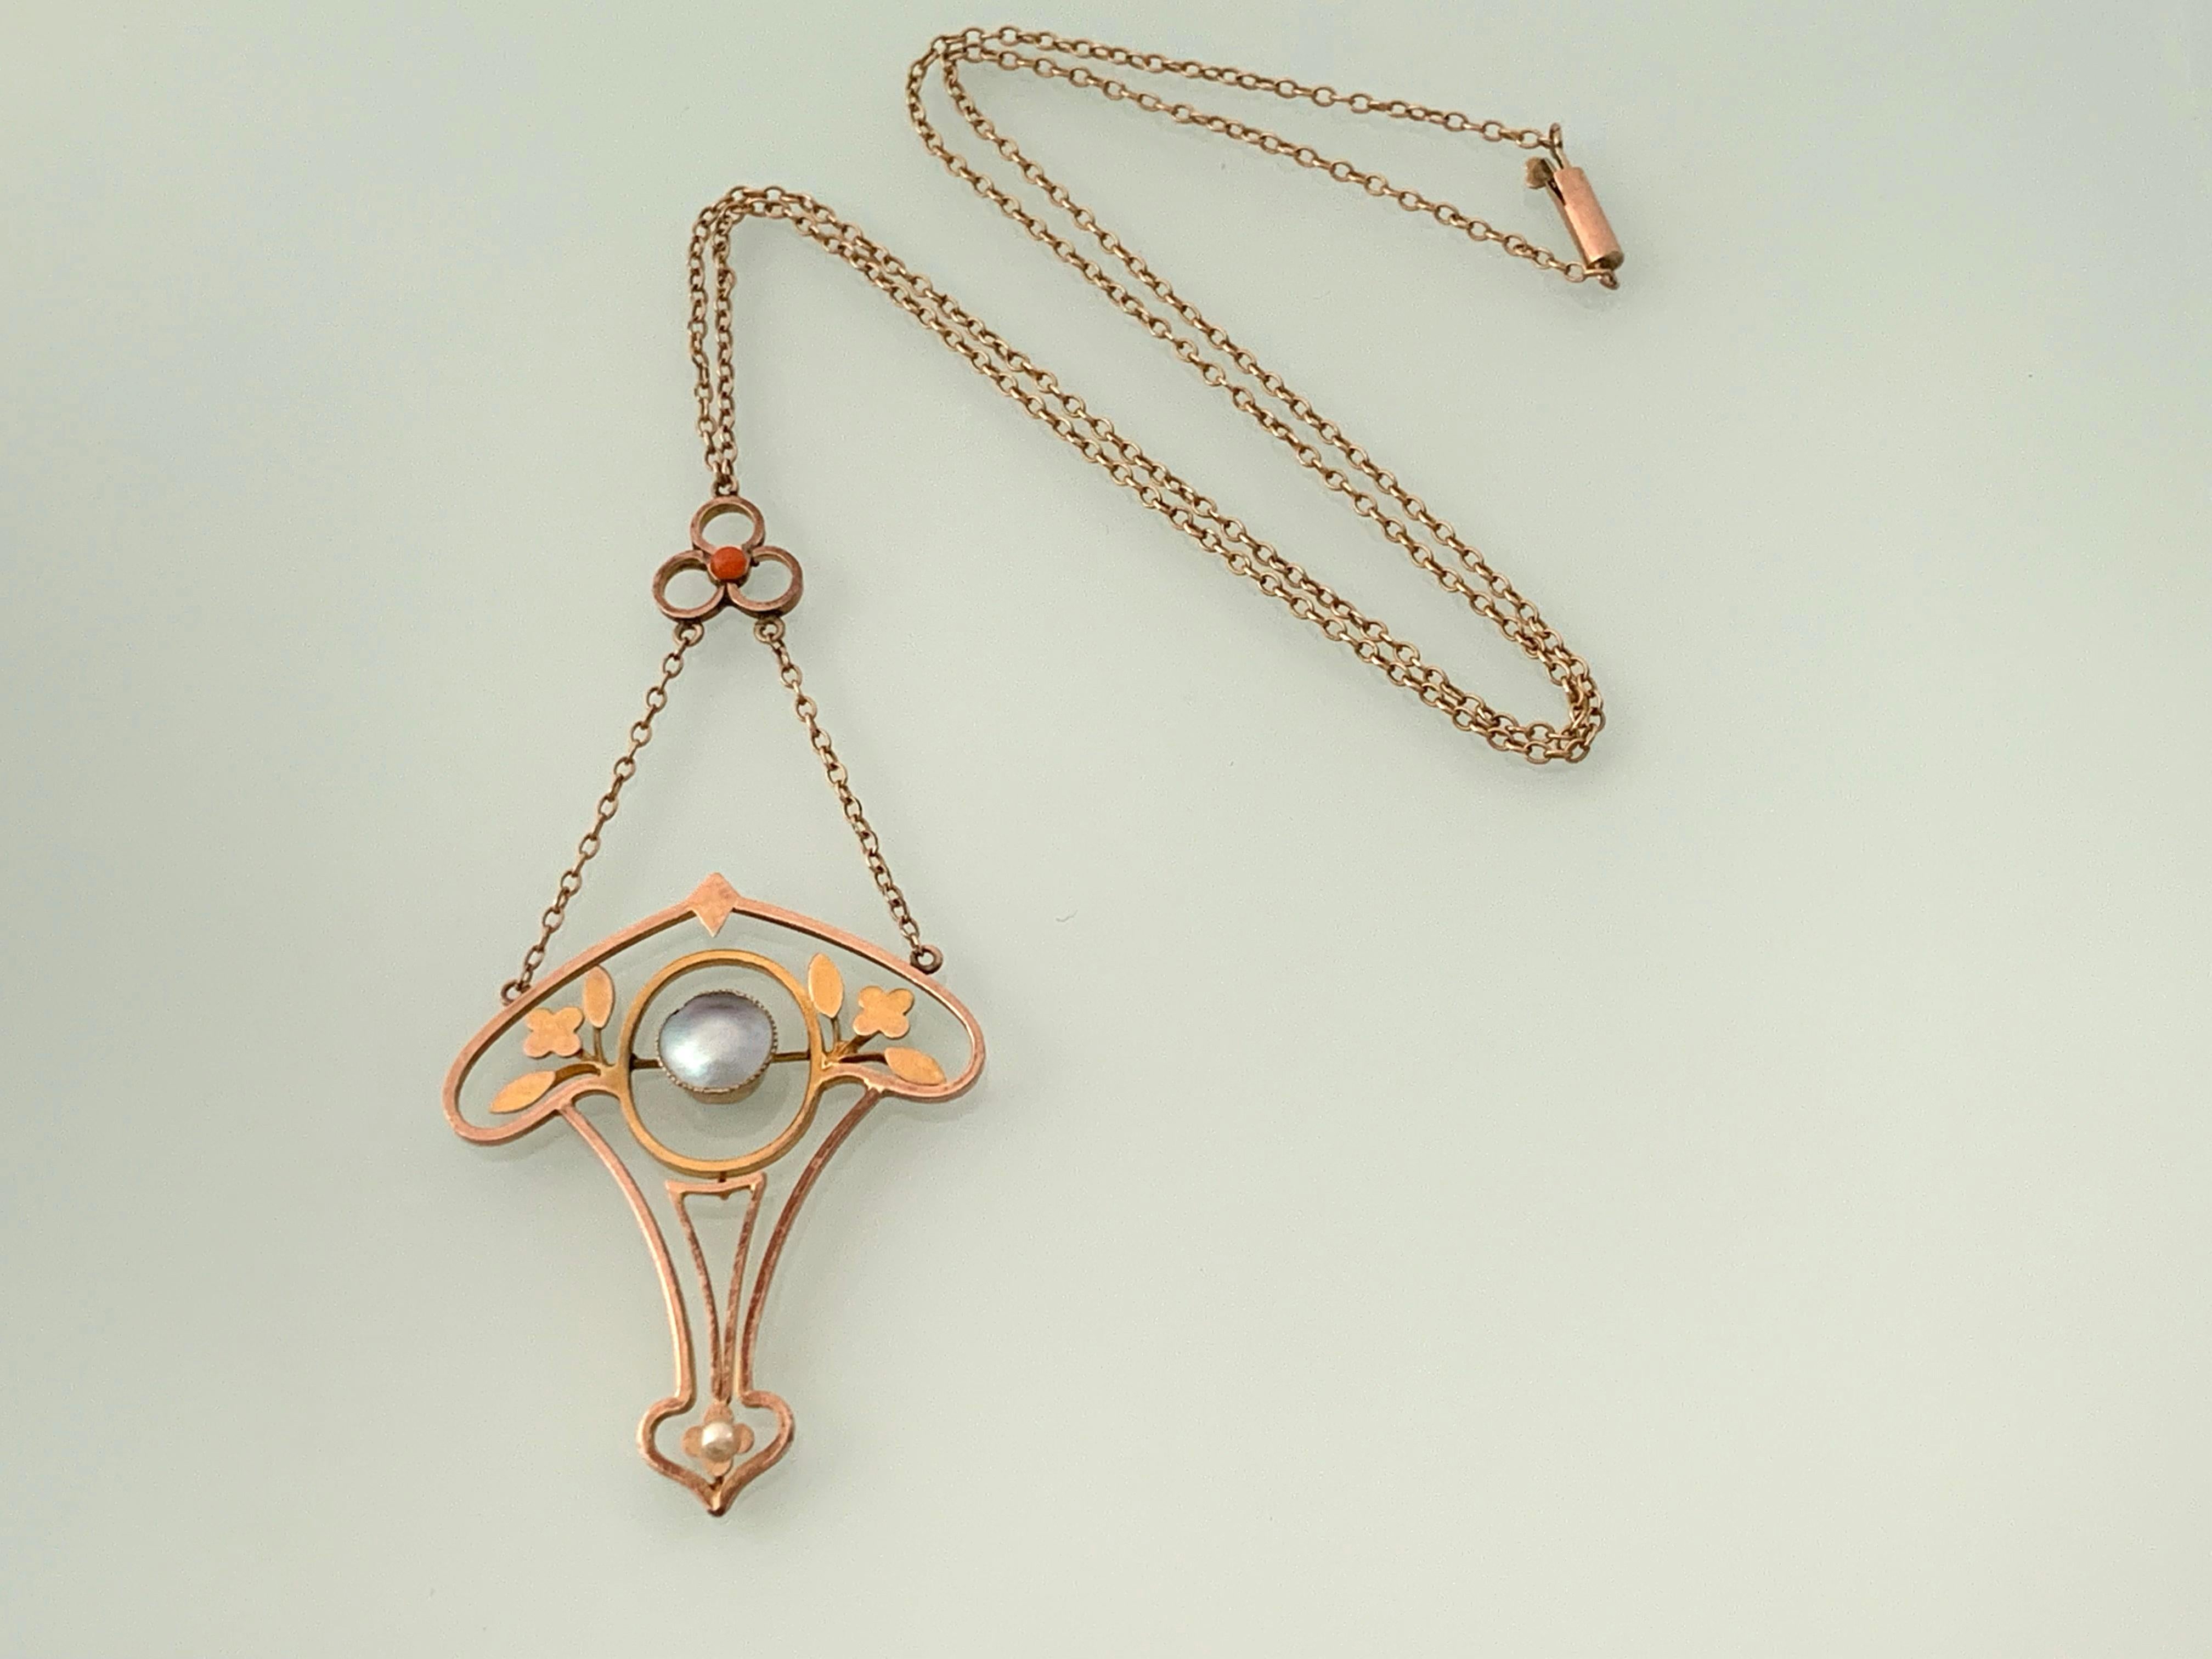 9ct Rose Gold viktorianische antike Halskette
mit zentraler Halbperle  gekrönt mit einem kleinen Korallencabochon und abgeschlossen mit einer Saatperle
Die zentrale Perle hat einen blauen Farbton
Verschlossen mit einer Barrel-Schließe.
Die Kette ist